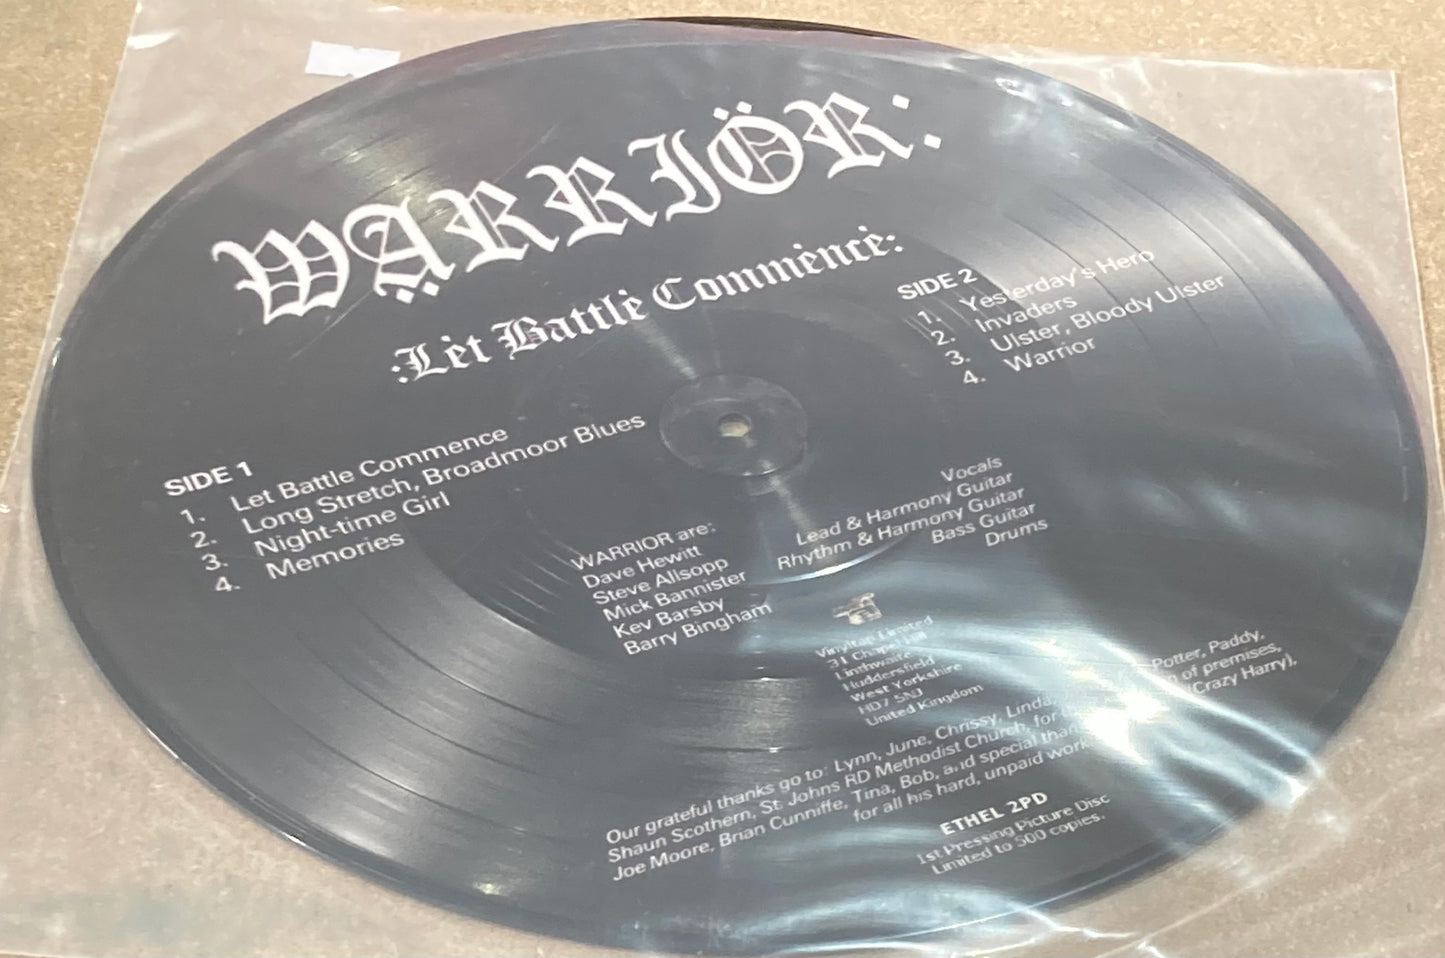 Warrior - Let Battle Commence - Picture Disc (Record LP Vinyl Album)